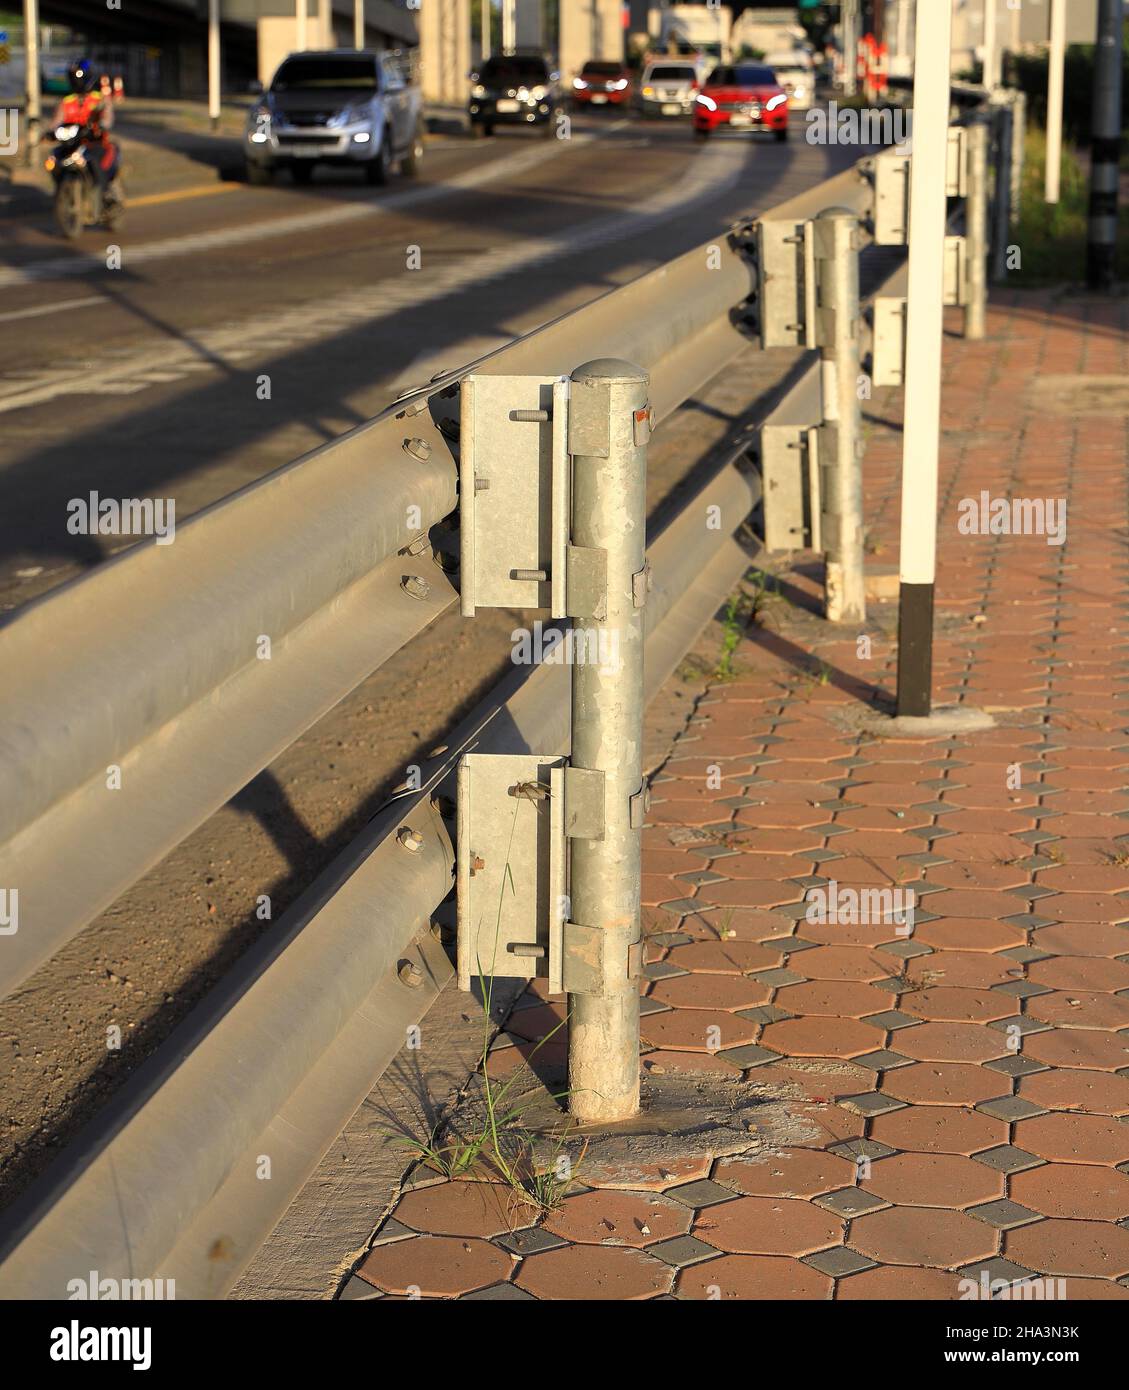 Barriere, Autobahnschutzschiene zur Verhinderung des Ausstiegs des Fahrzeugs aus der Bordsteinkante oder Brücke, Barriere der Straße, Trennstreifen. Stockfoto